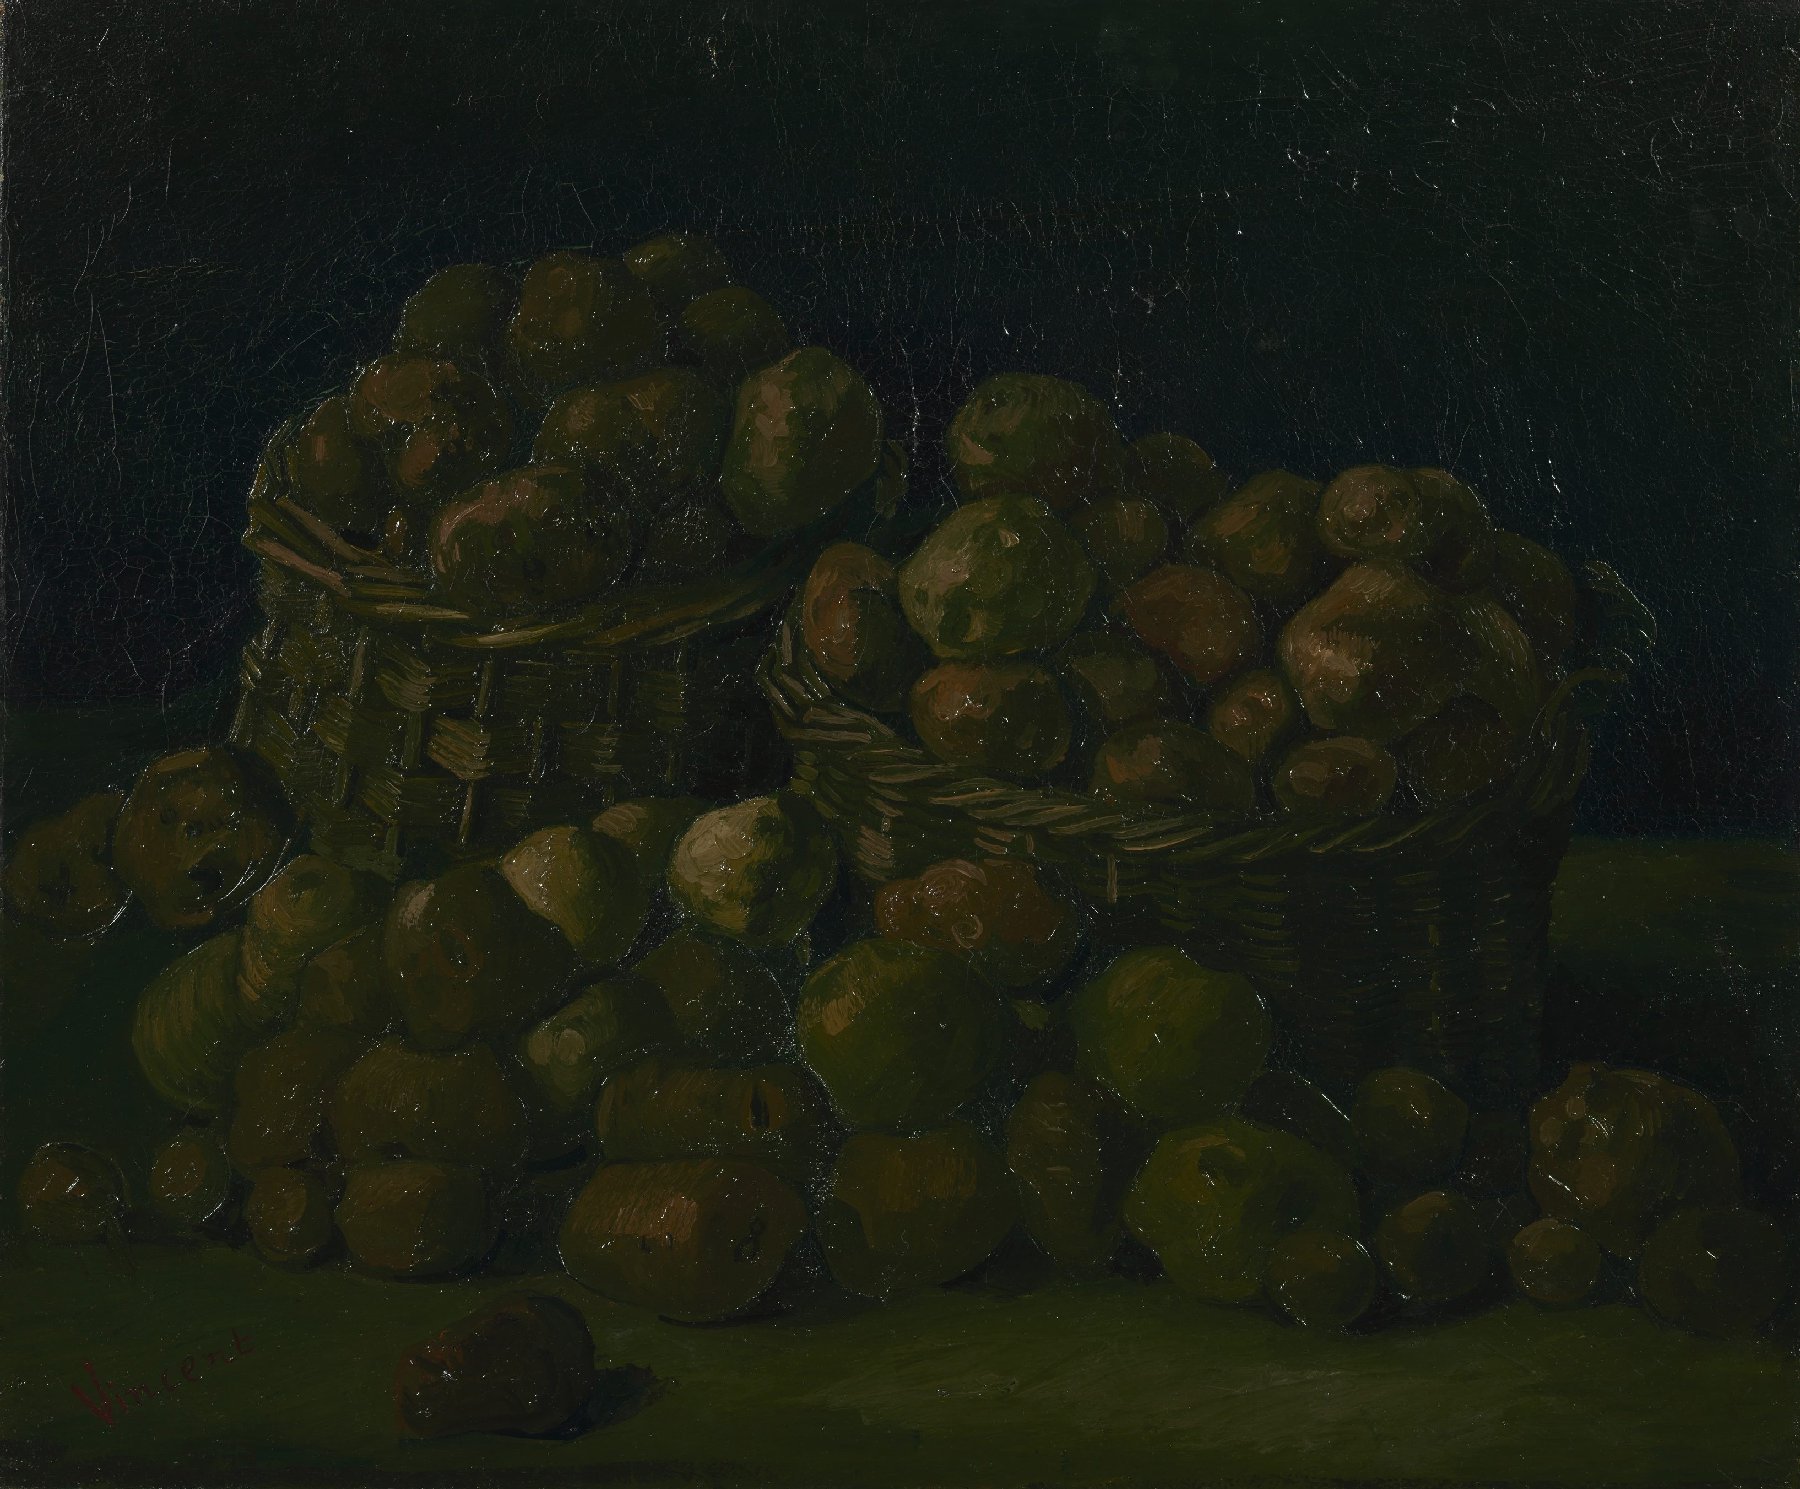 Manden met aardappels Vincent van Gogh (1853 - 1890), Nuenen, september 1885